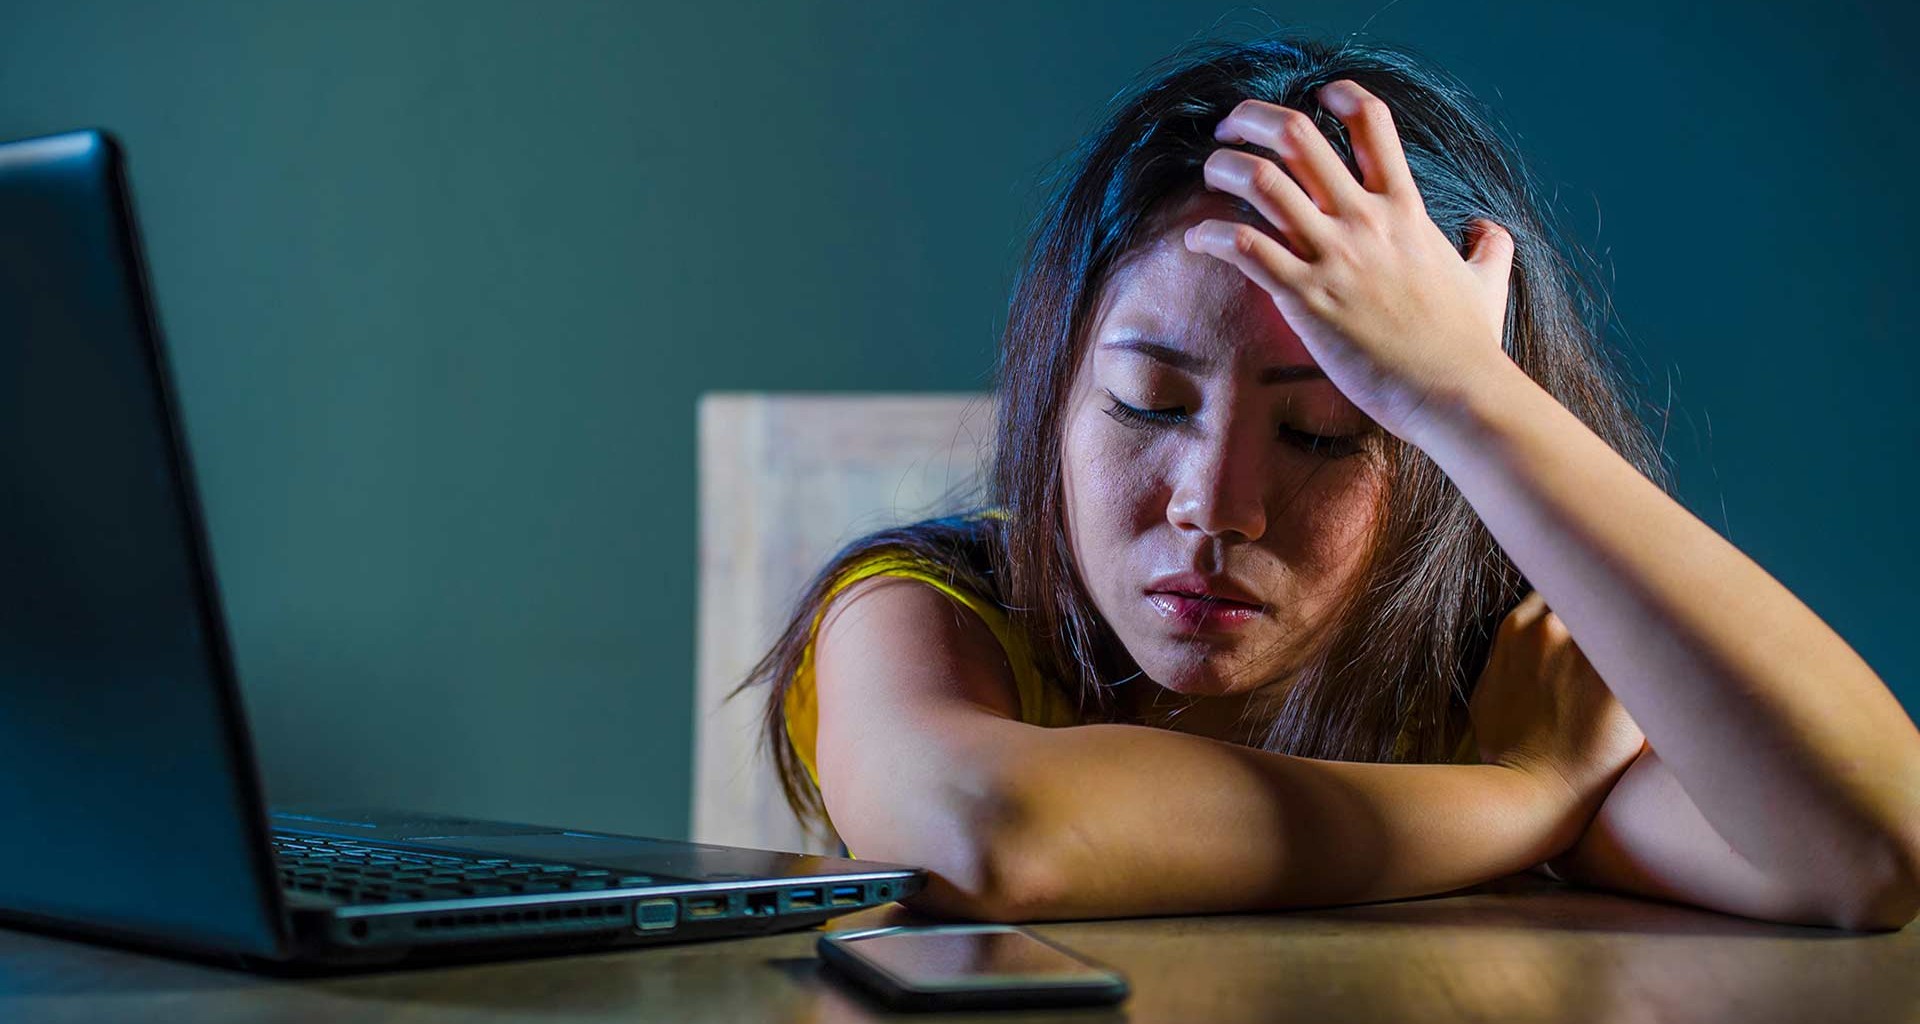 5 tipos de ciberacoso y cómo afectan la salud mental y emocional | Tecnológico de Monterrey